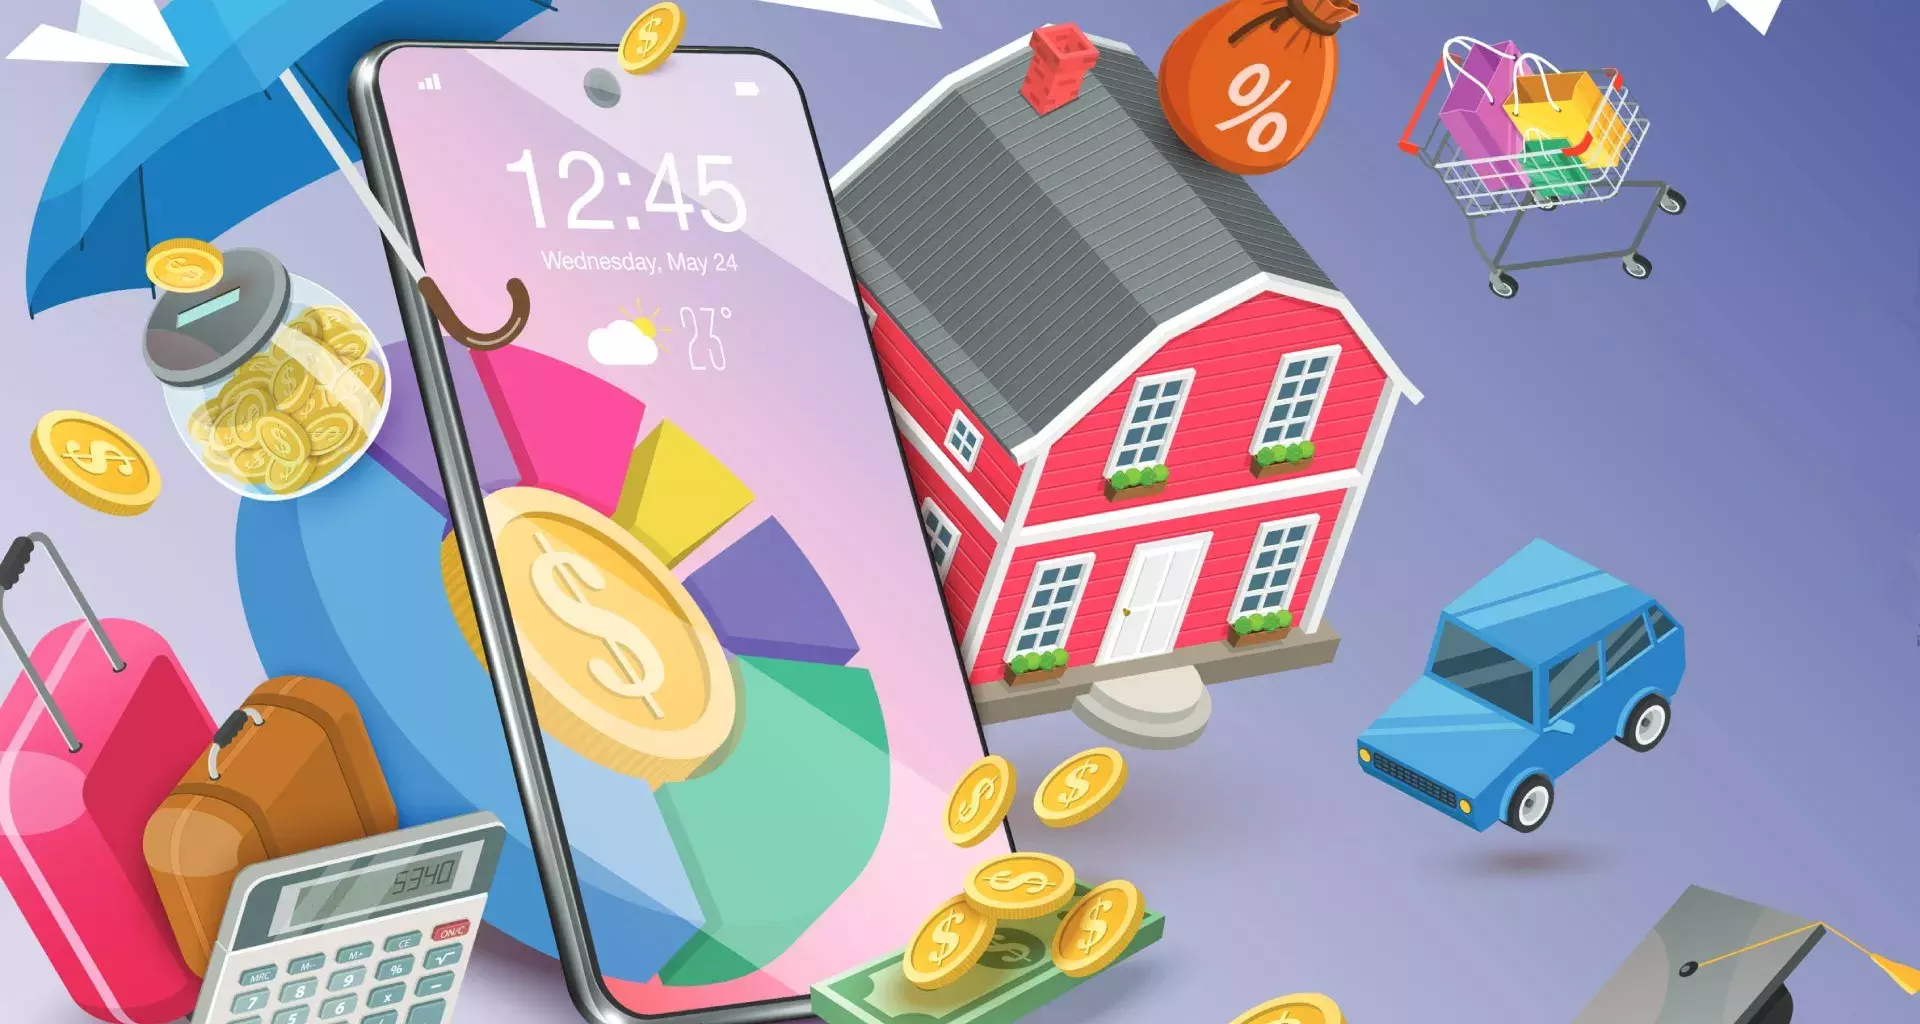 Ilustración con elementos de finanzas personales, como monedas, calculadora y cosas que representan gastos como una casa, un auto y un carrito de supermercado